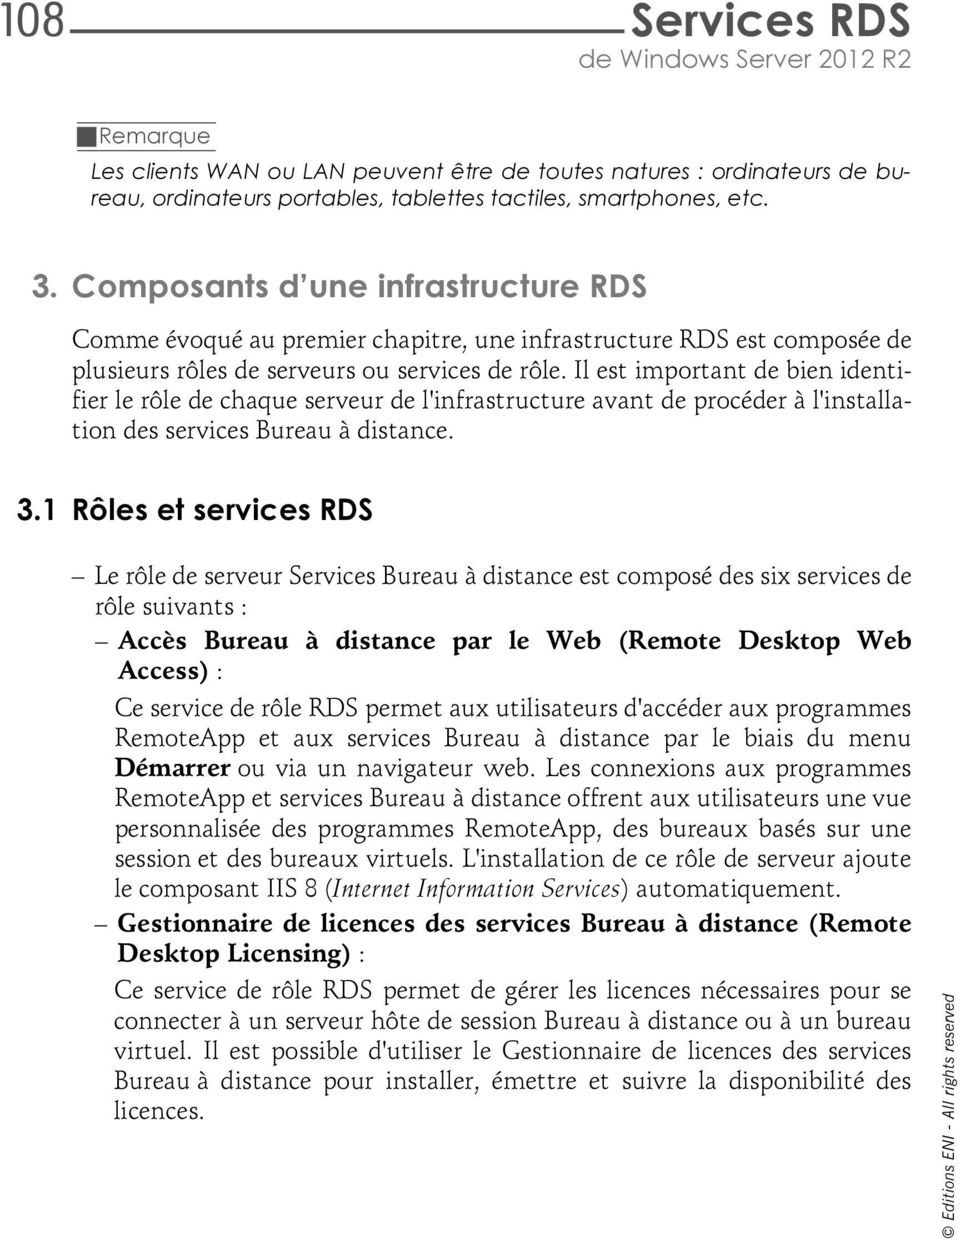 Armelin ASIMANE. Services RDS. de Windows Server 2012 R2. Remote Desktop  Services : Installation et administration - PDF Téléchargement Gratuit